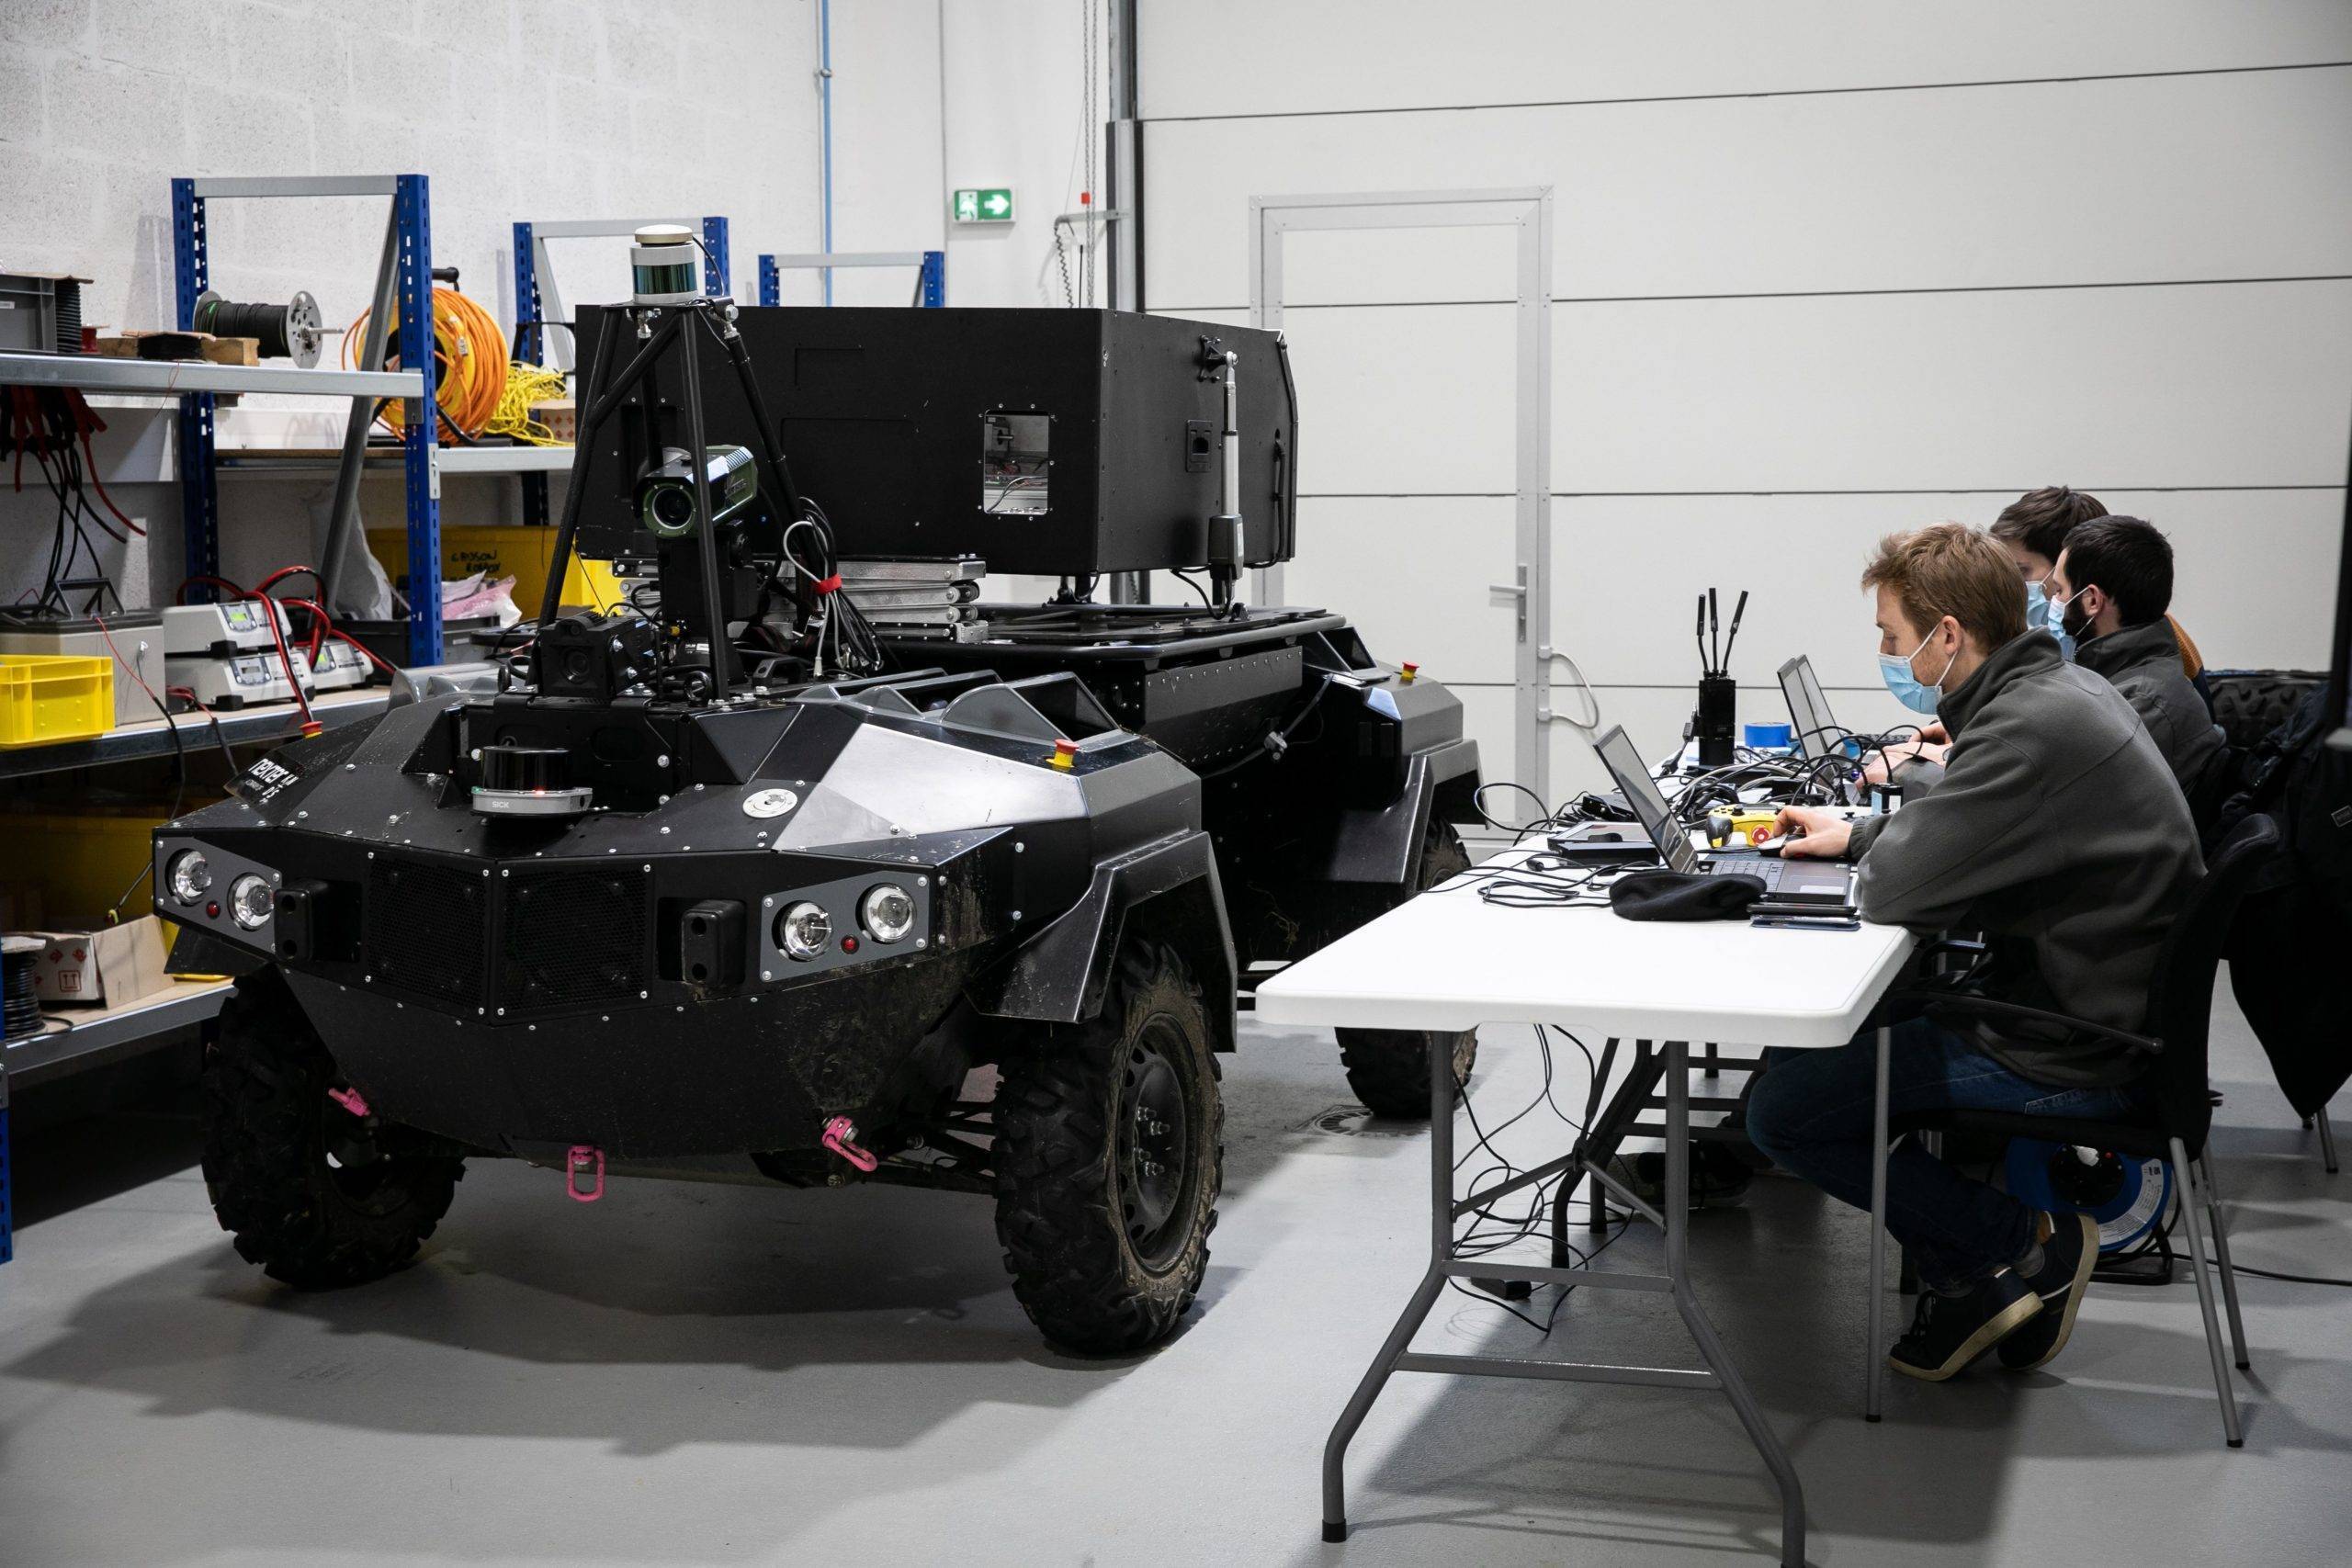 Recherche et developpement au sein de VEDECOM sur un vehicule autonome militaire de Nexter. Credit:ROMUALD MEIGNEUX/SIPA/2102191913